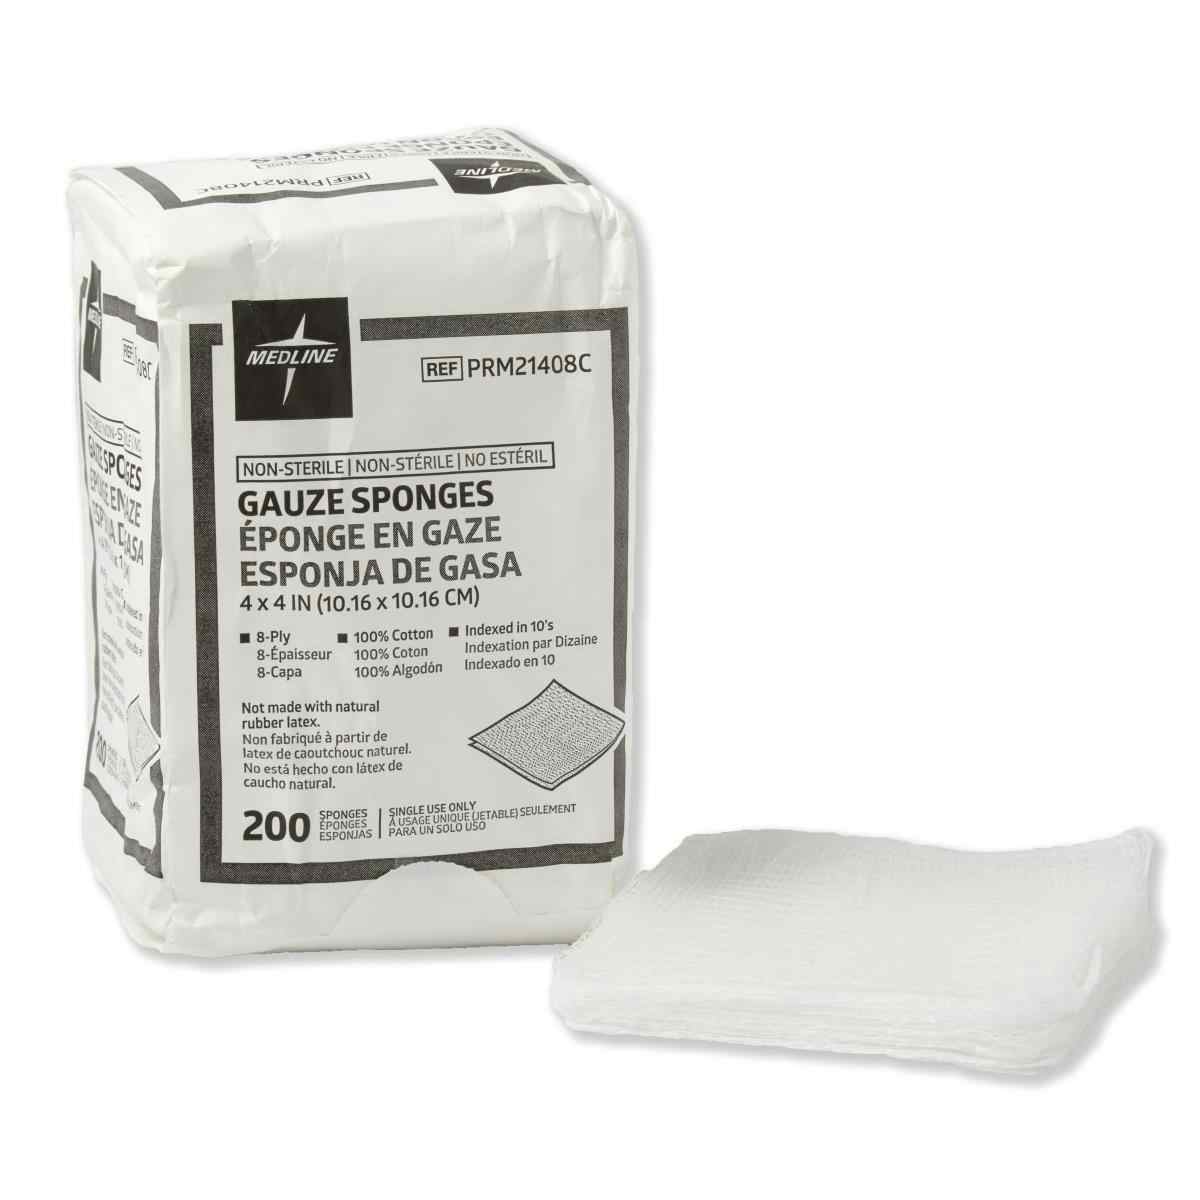 Medline Non-Sterile Woven Cotton 8-Ply Gauze Sponges, PRM21408CZ, 4" X 4" - Bag of 200